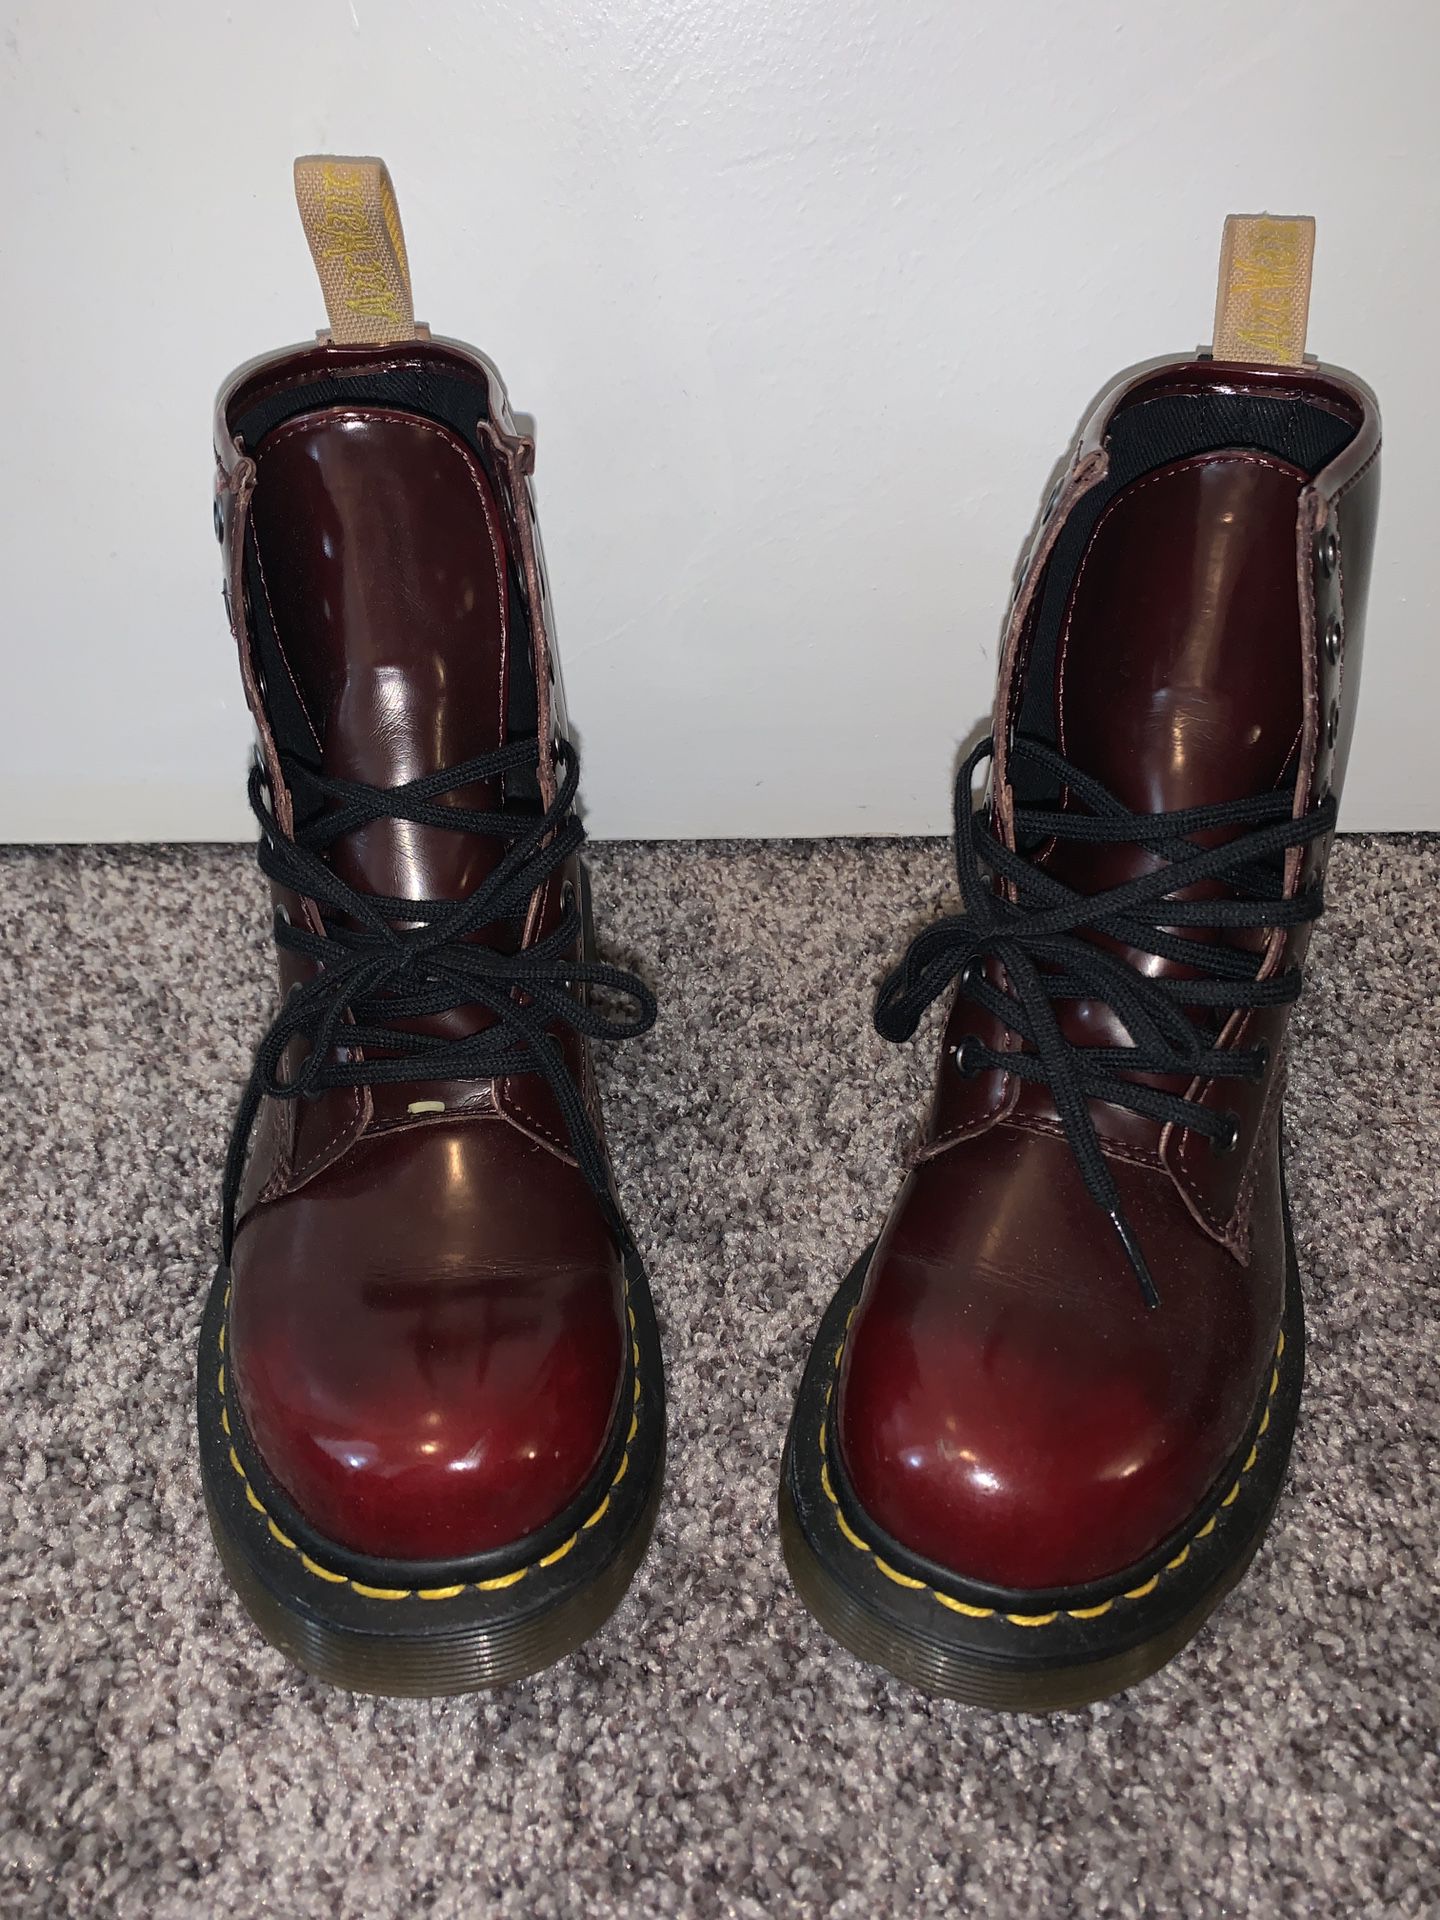 Doc Marten, vegan boots, boots, doc martens, rain boots, red boots, Dr. Martens